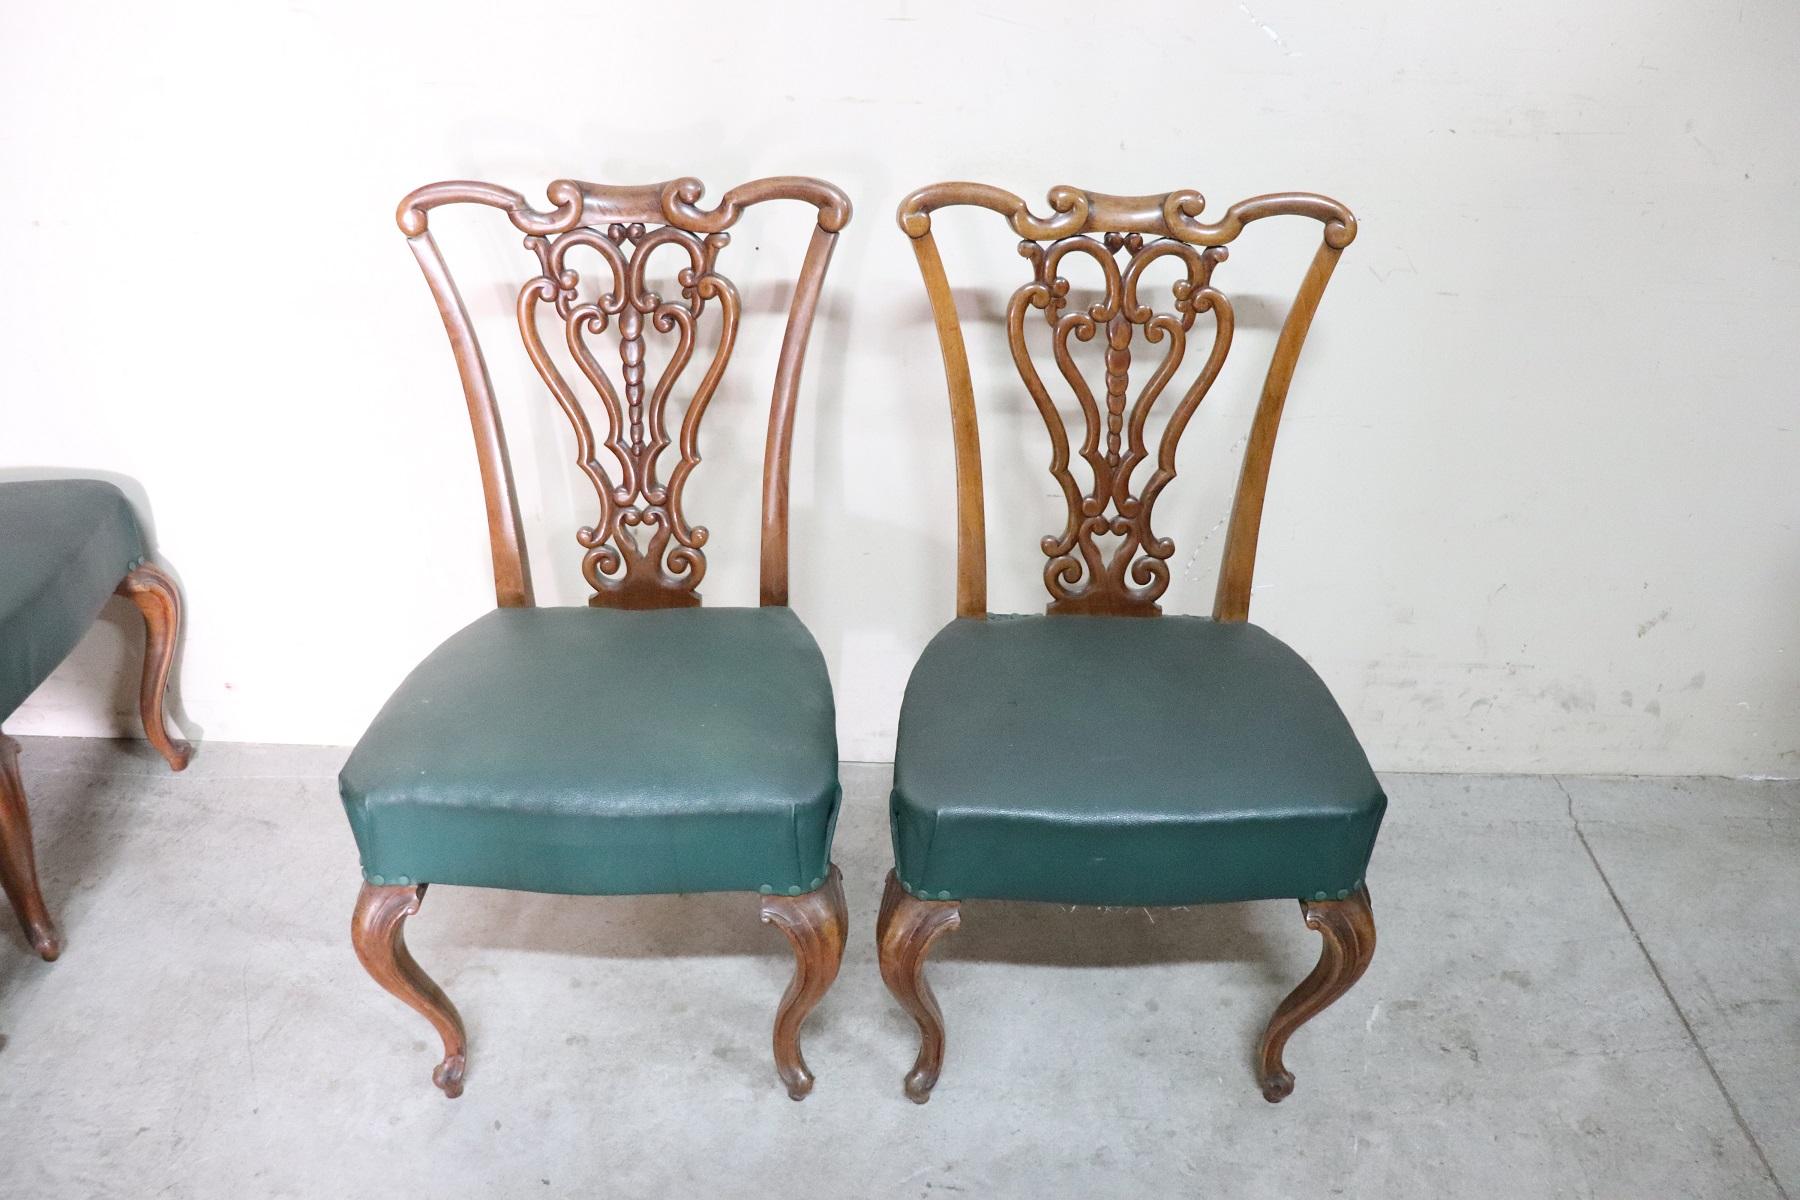 Serie von acht raffinierten, authentischen italienischen Jugendstil-Stühlen aus Nussbaumholz aus dem 19. Jahrhundert im Stil von Alberto Issel. Raffinierte und seltene Dekoration der Rückseite ist handgeschnitzt mit einem Locken und wirbelt bewegt.